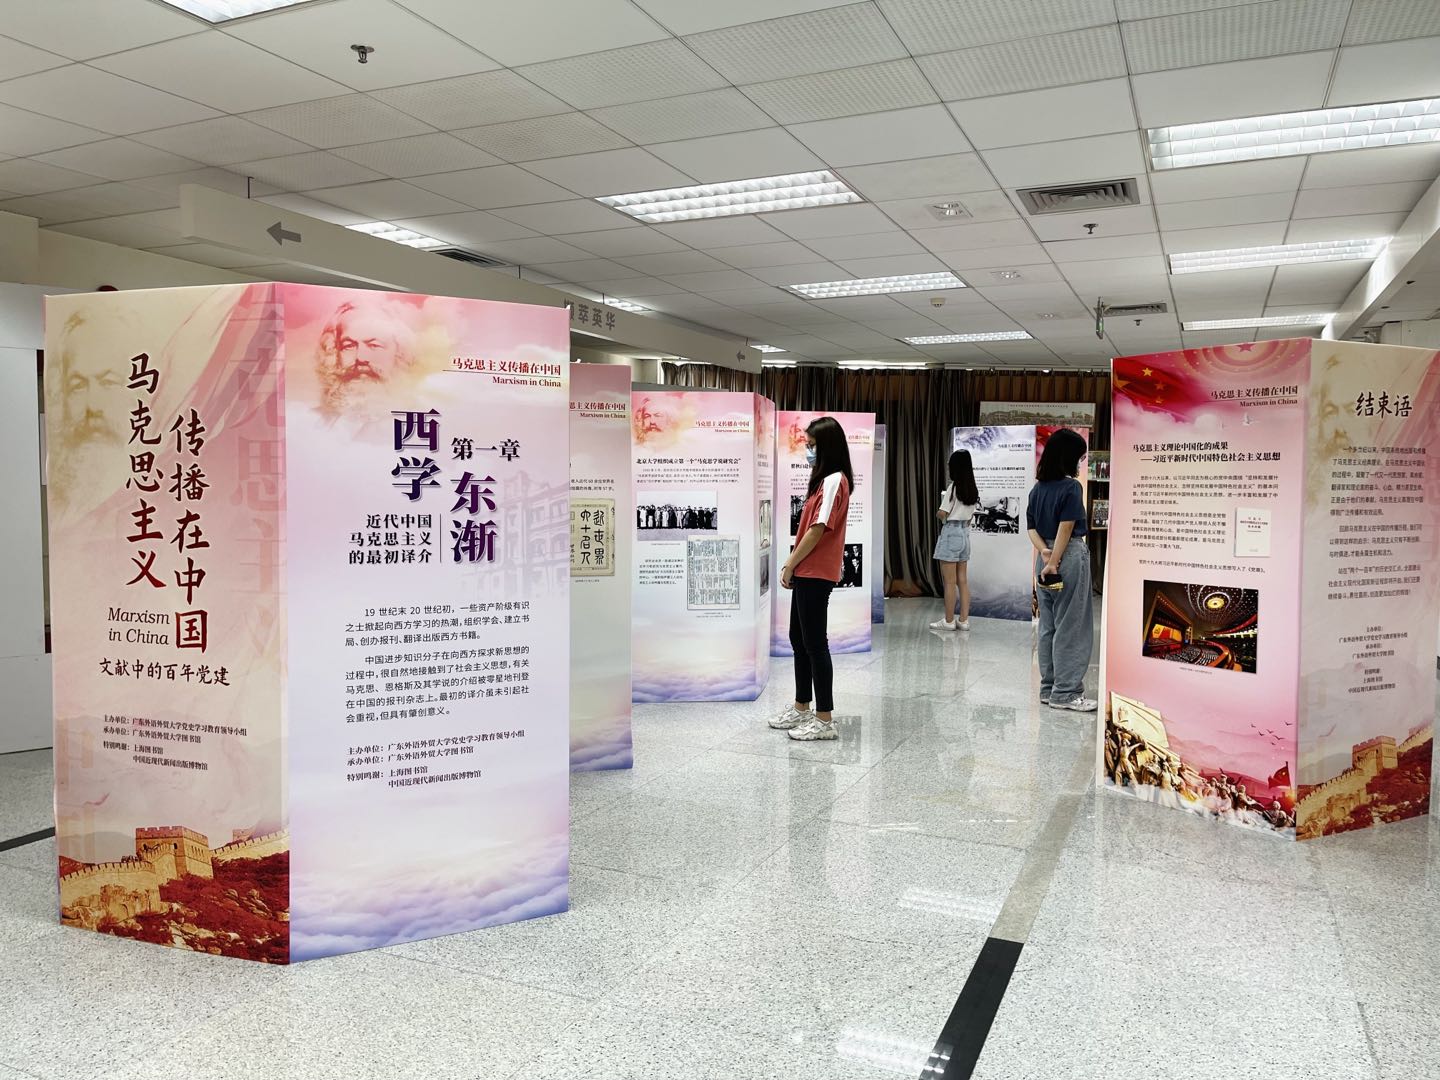 图书馆推出“马克思主义传播在中国 ——文献中的百年党建”主题展